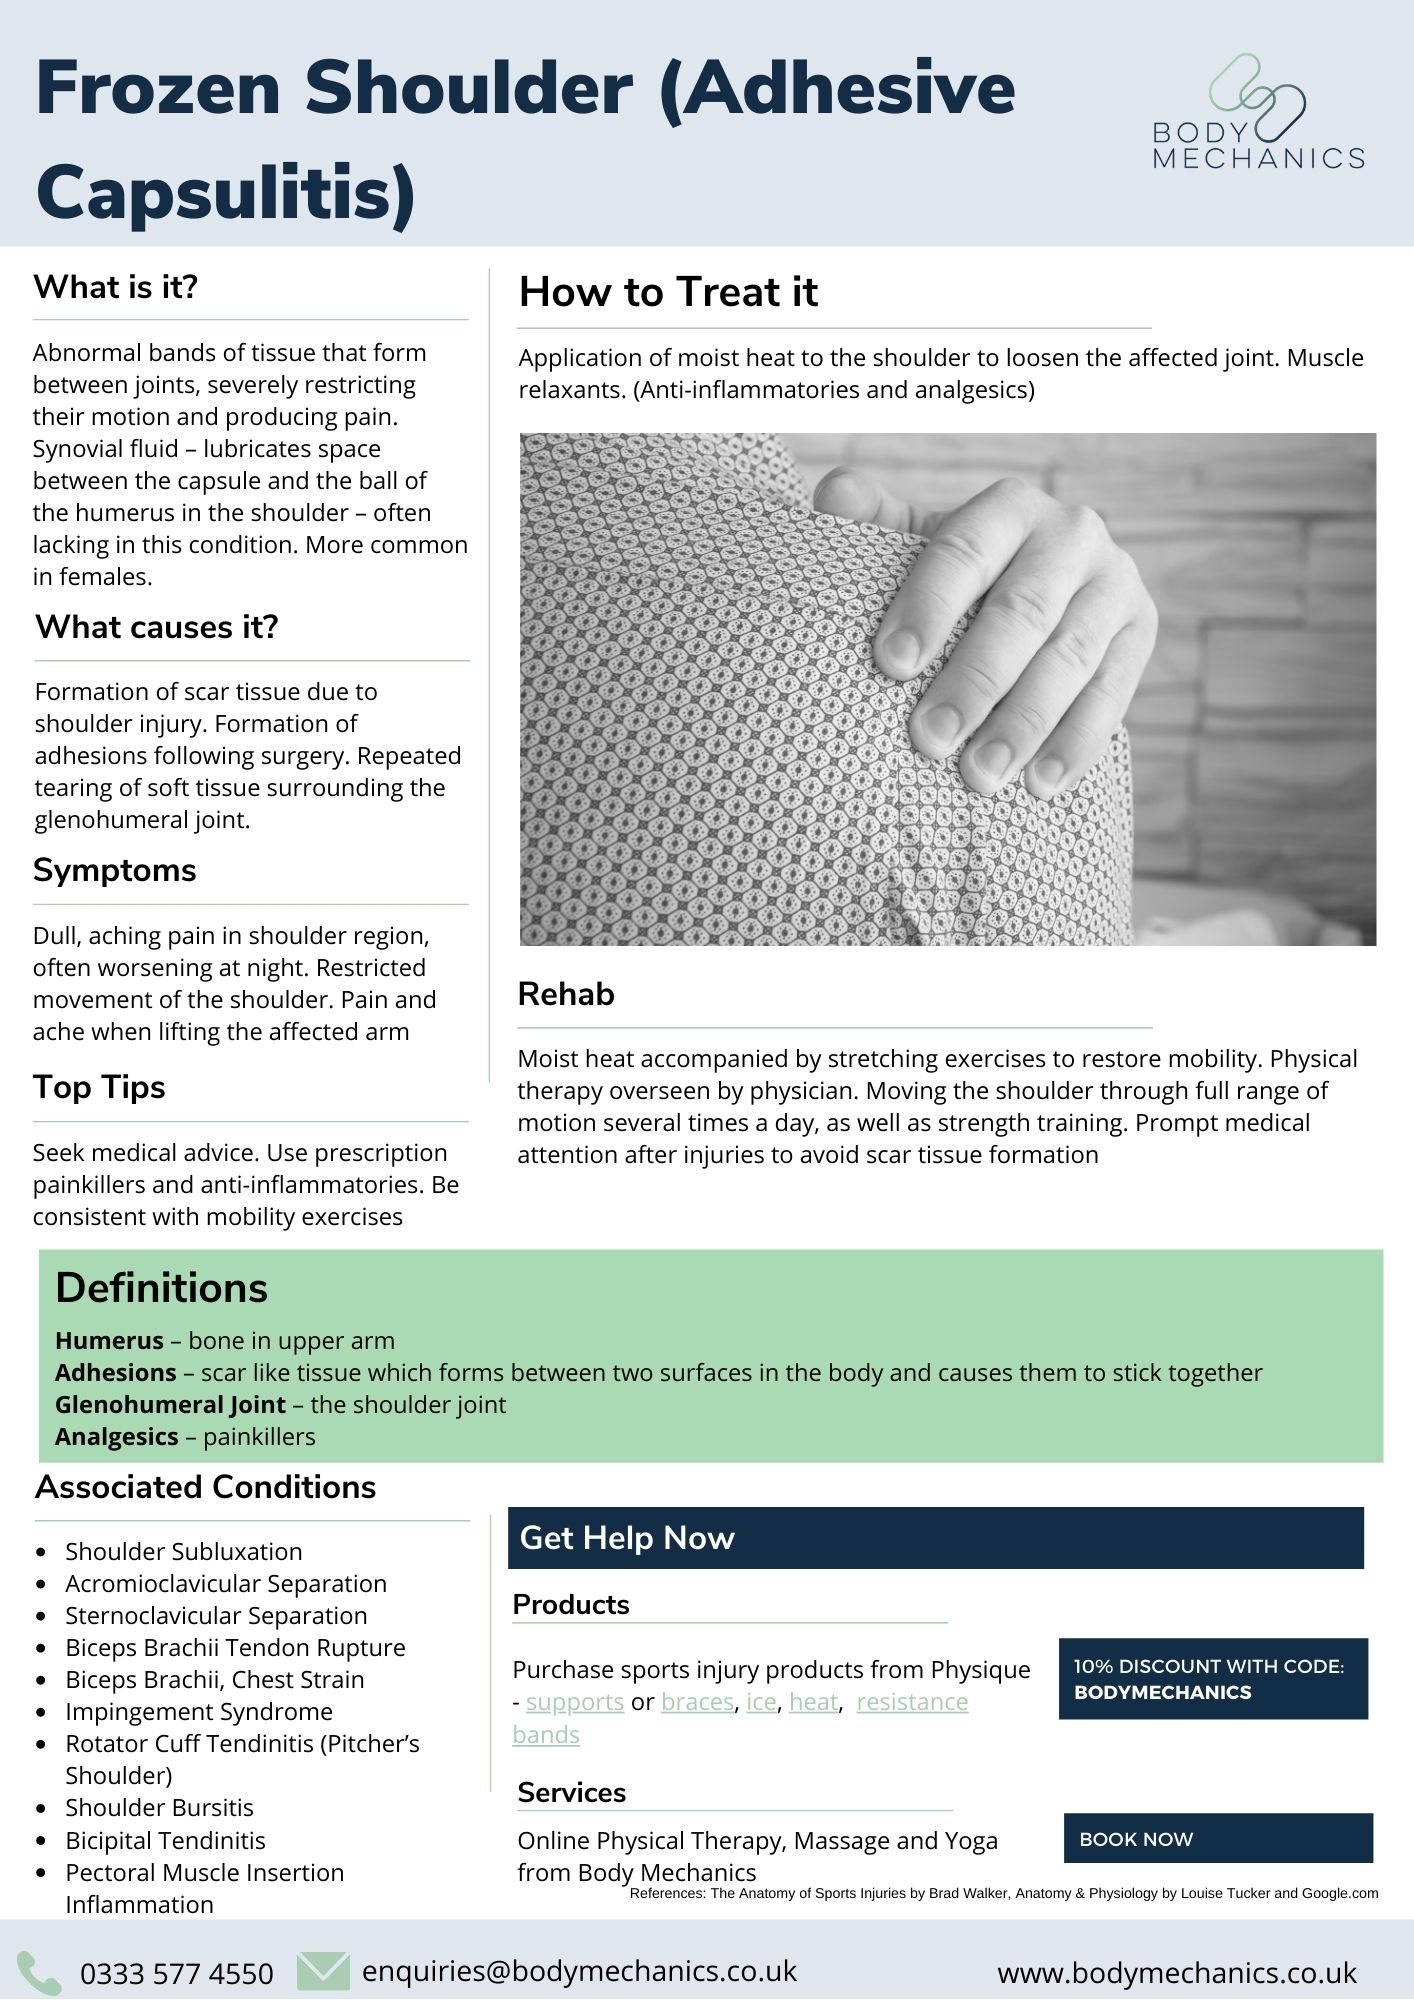 Frozen Shoulder (Adhesive Capsulitis) Infosheet